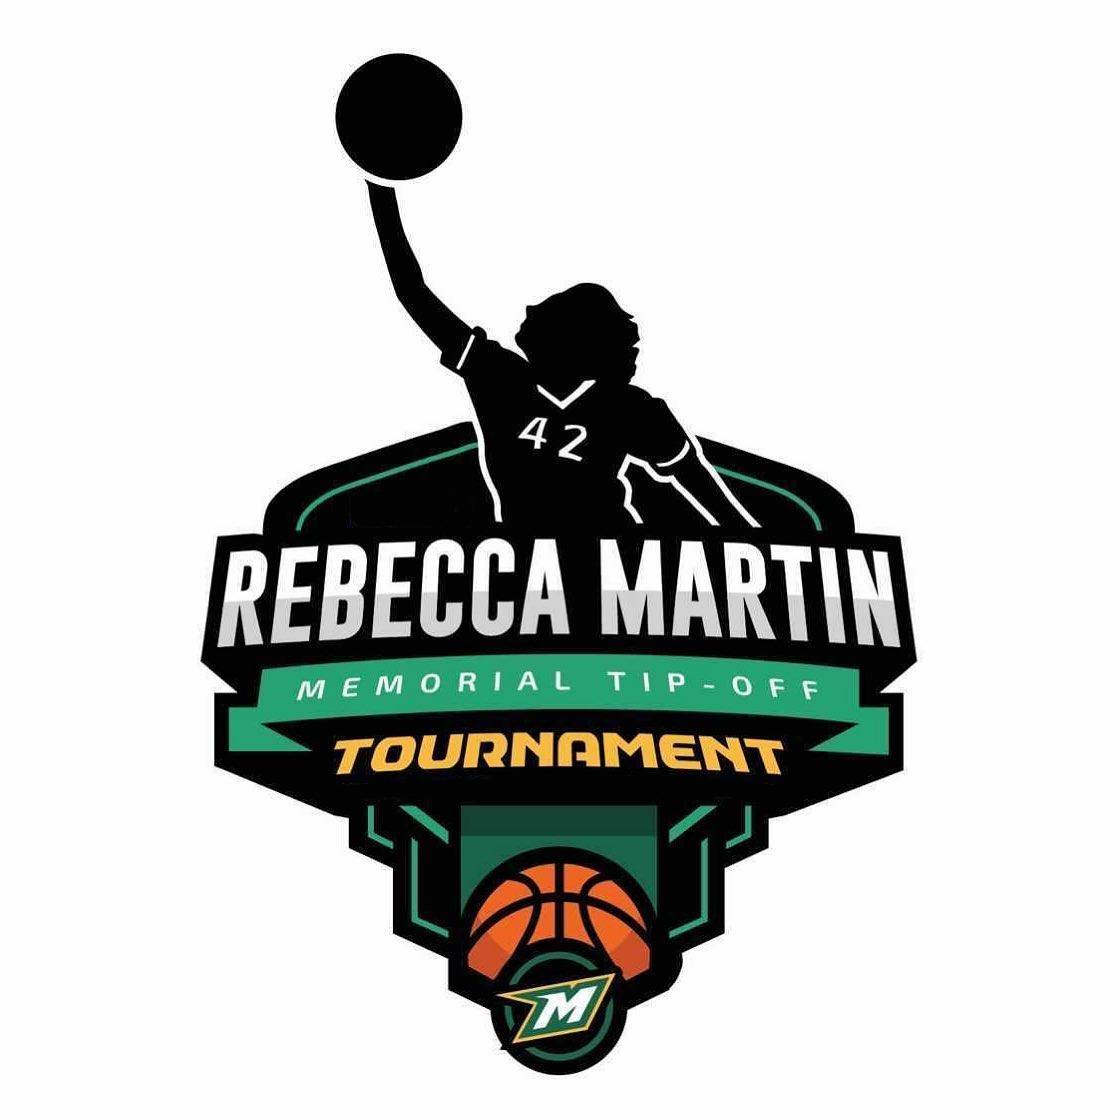 Rebecca Martin Tournament logo